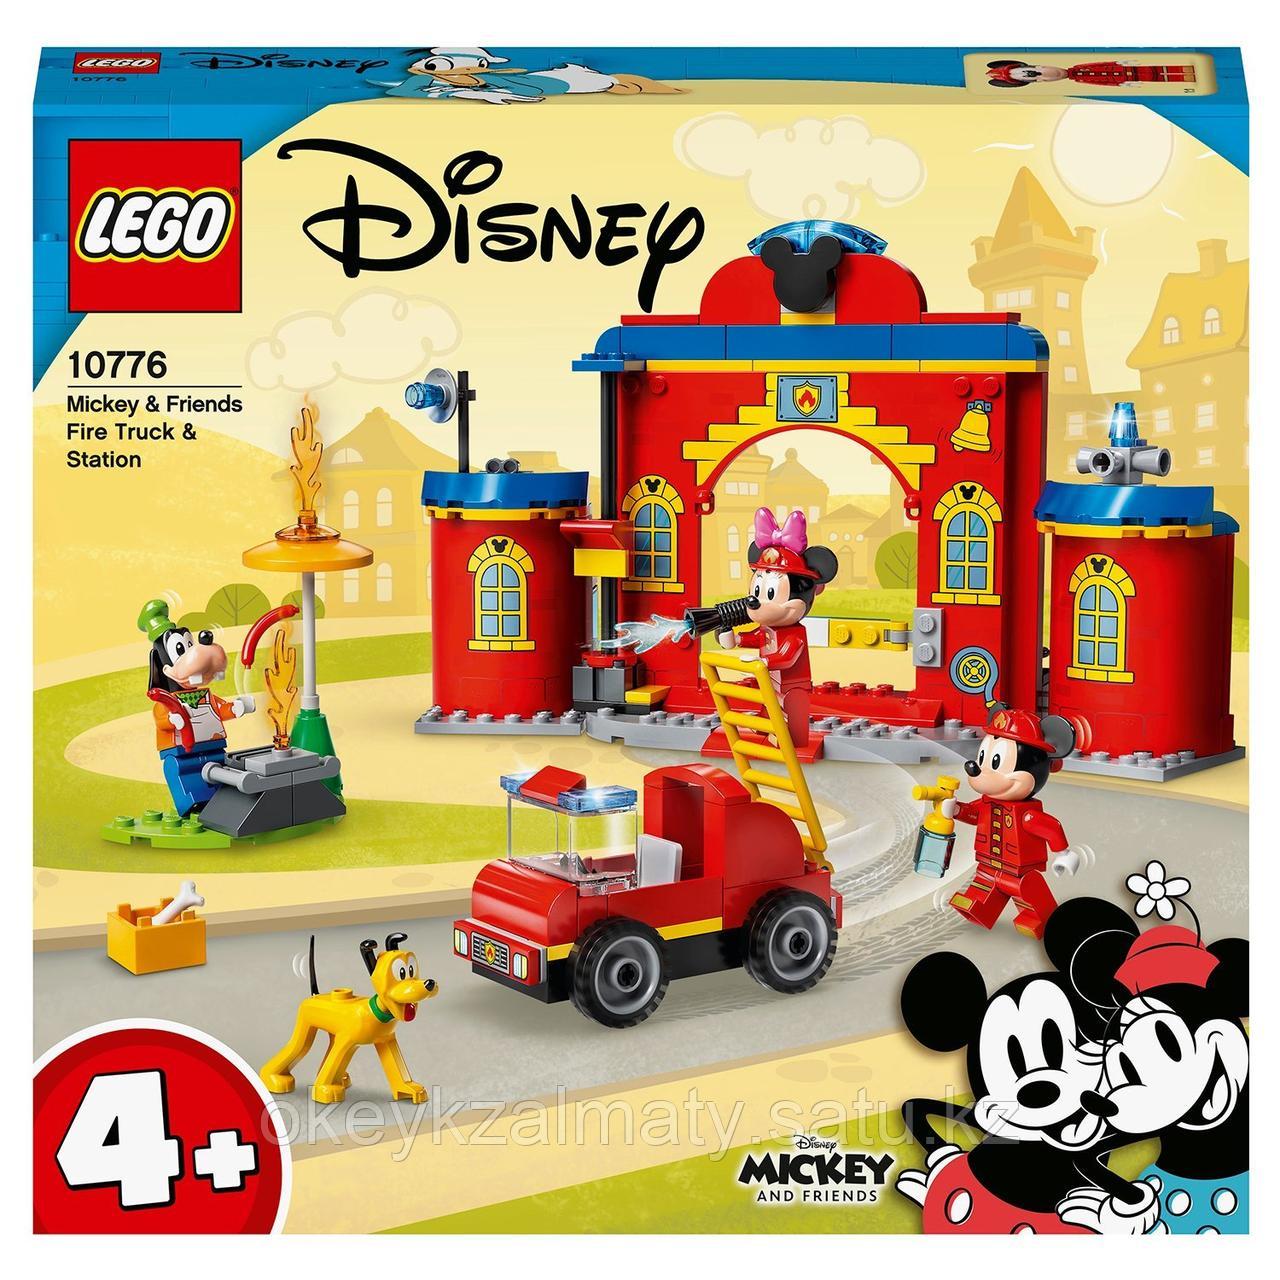 LEGO Disney Mickey and Friends: Пожарная часть и машина Микки и его друзей 10776